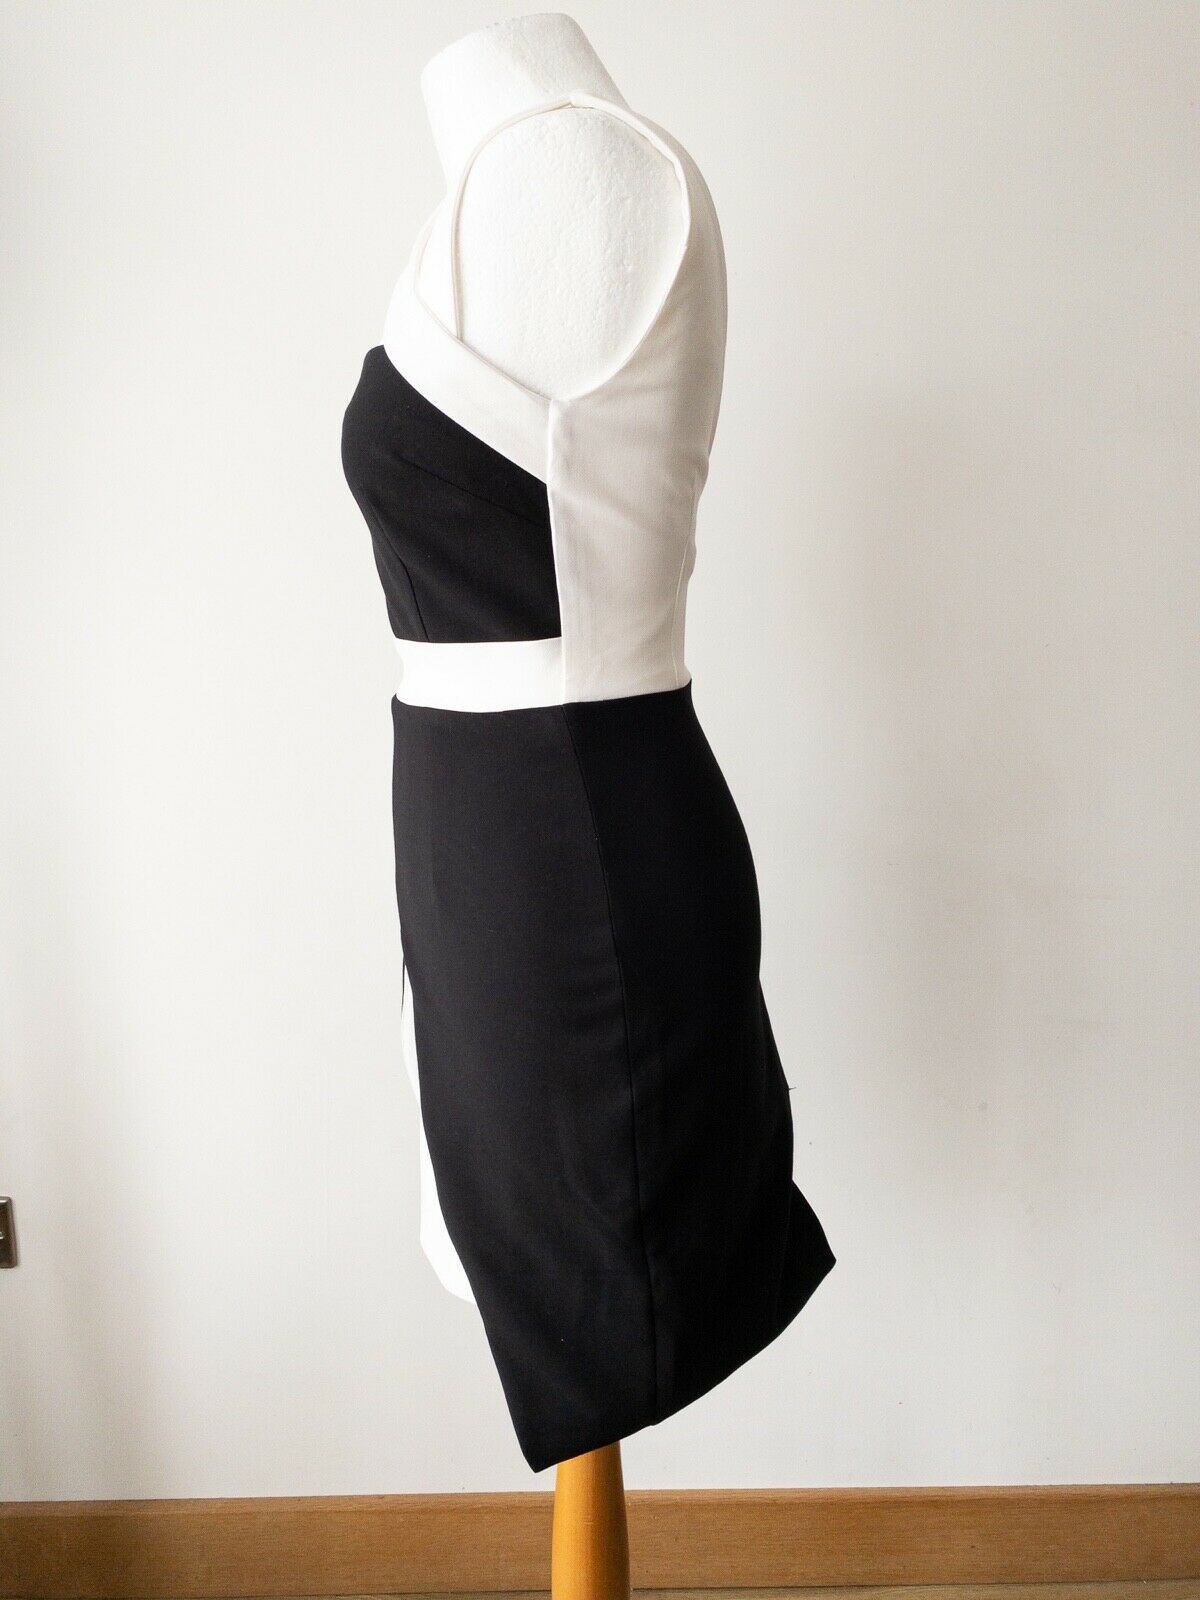 NOVO London Monochrome Cross Strap Detail Faux Layered Dress Size 8, 10